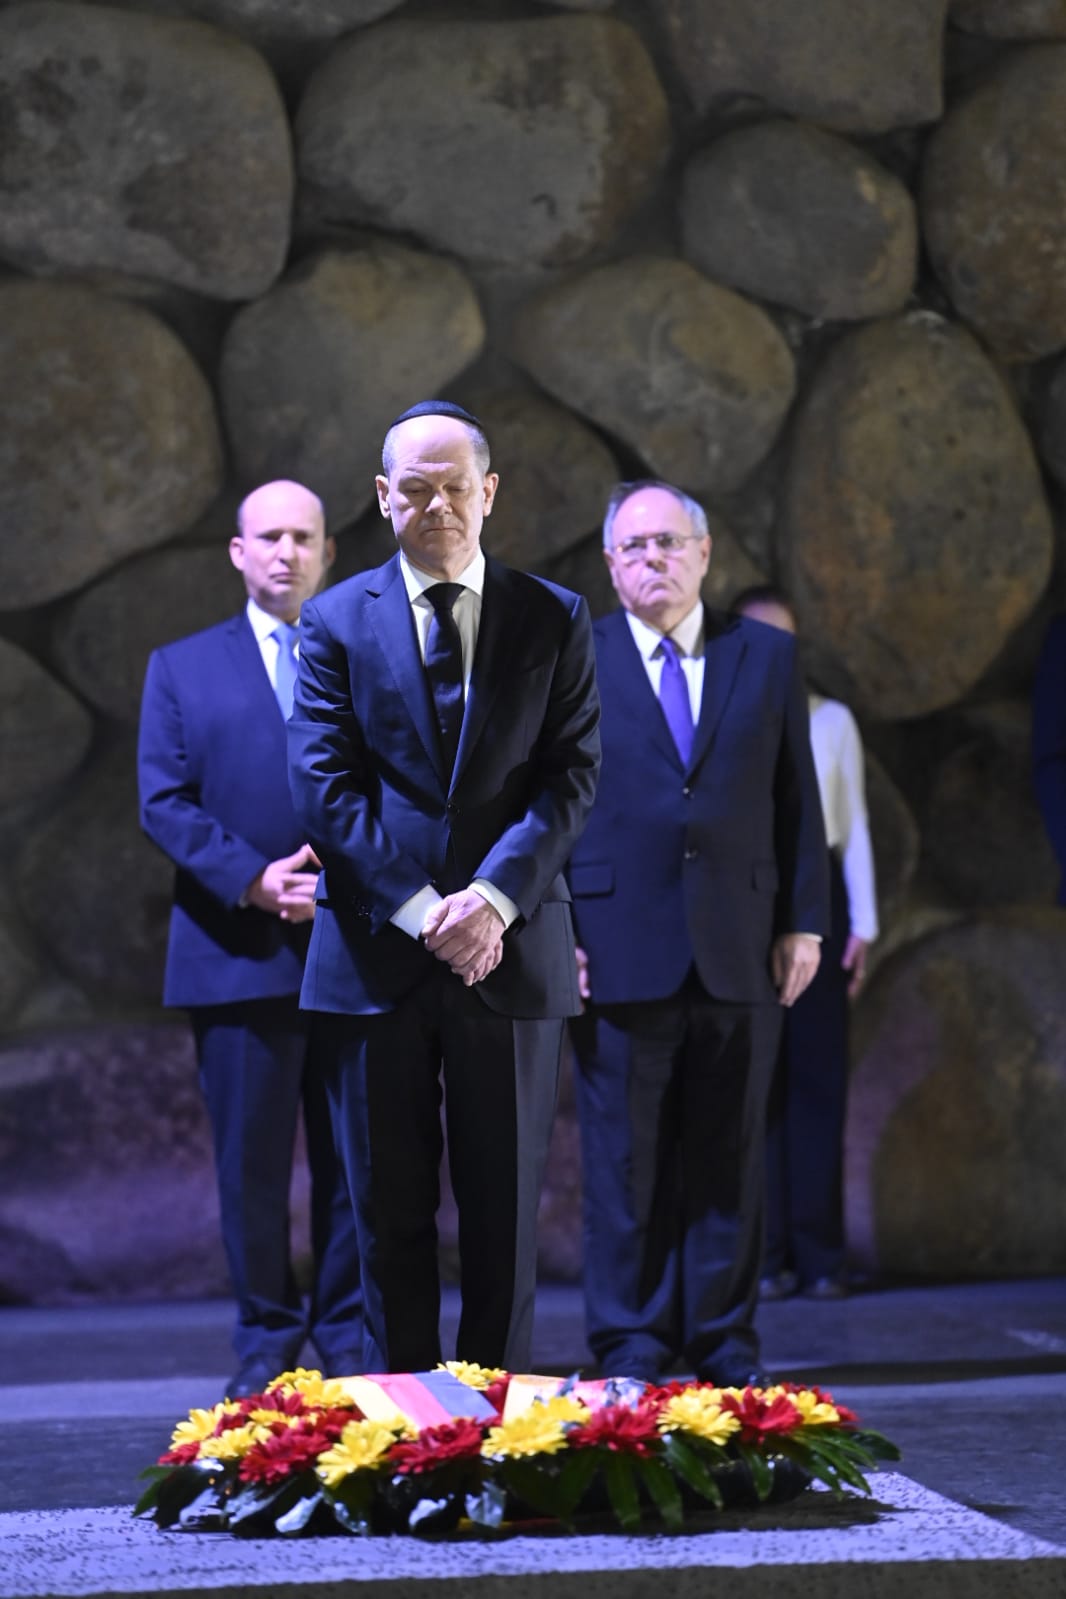 Bundeskanzler Olaf Scholz gedenkt in der Gedenkhalle von Yad Vashem der sechs Millionen jüdischen Männer, Frauen und Kinder, die während des Holocaust ermordet wurden